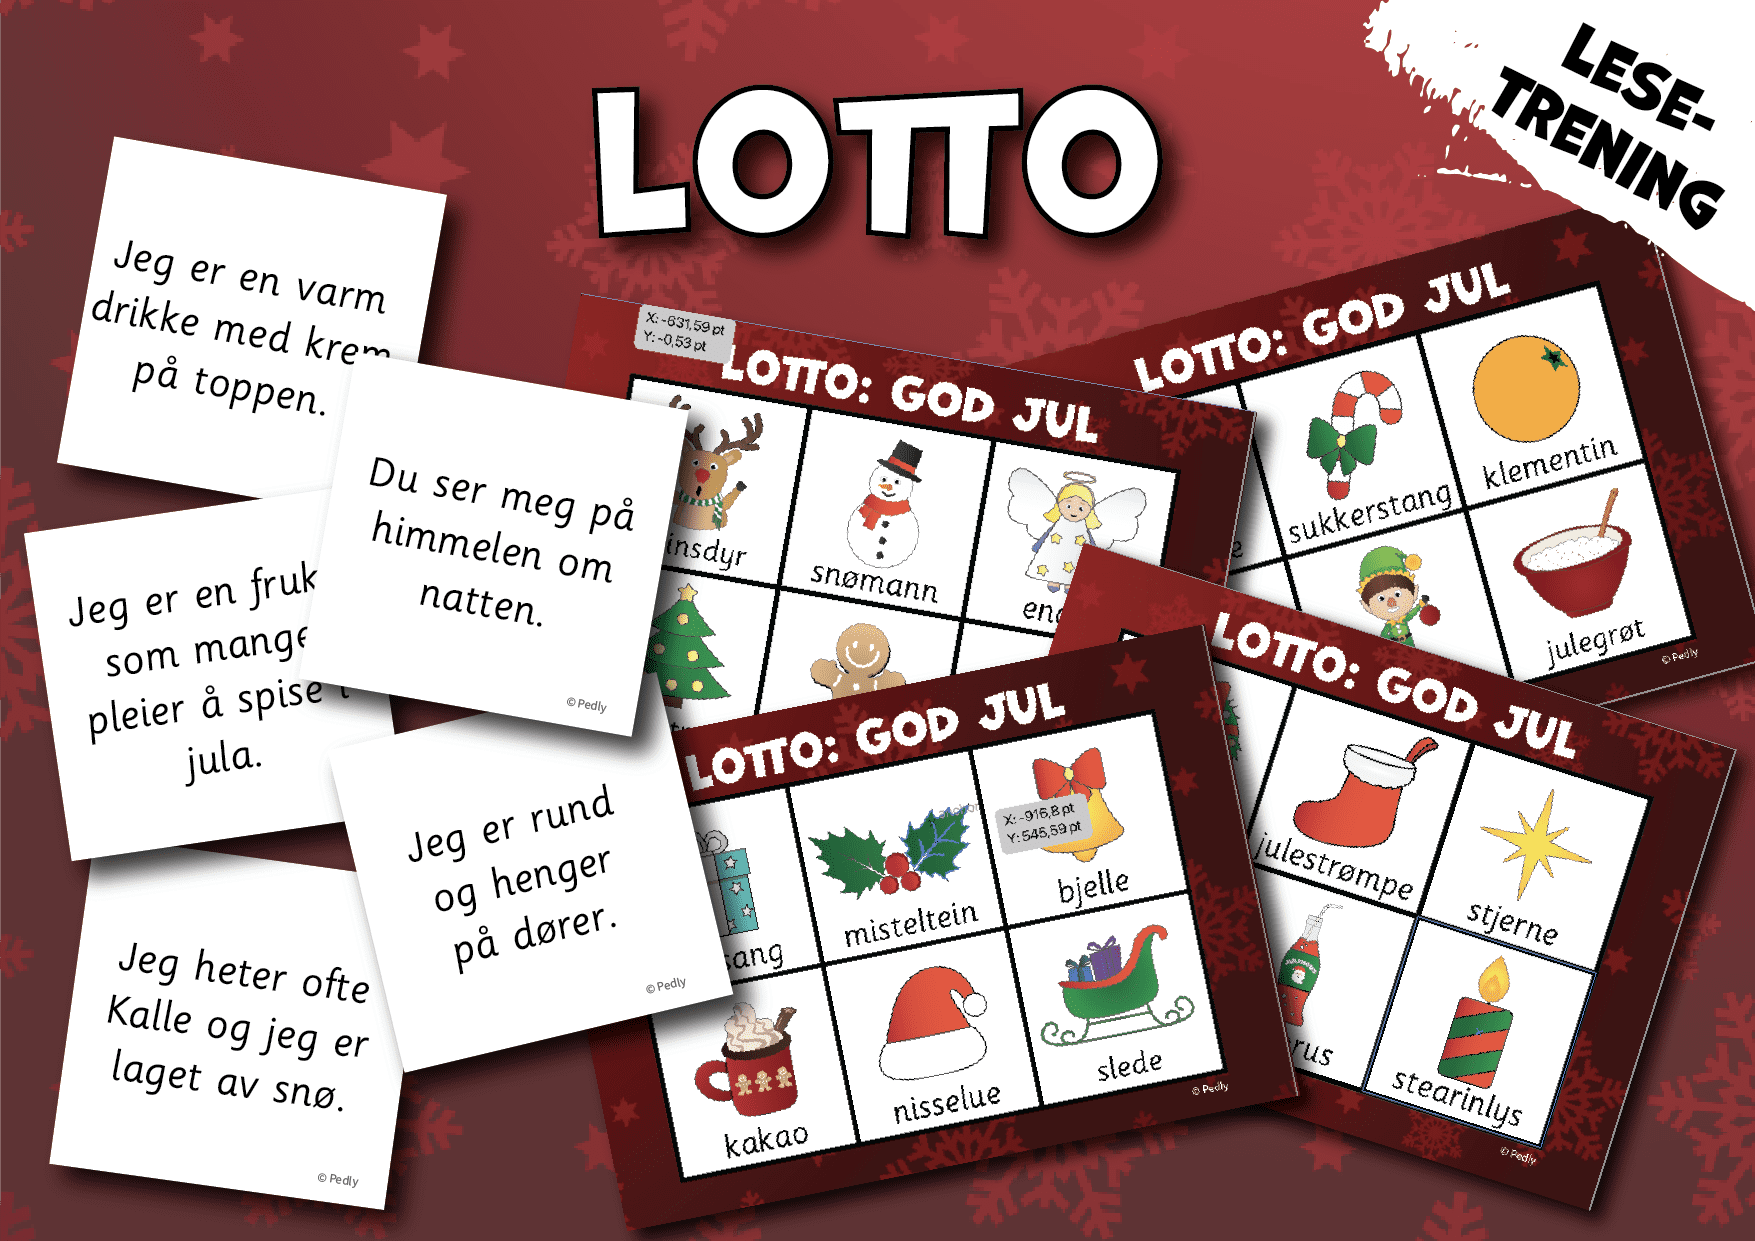 Lotto: jul